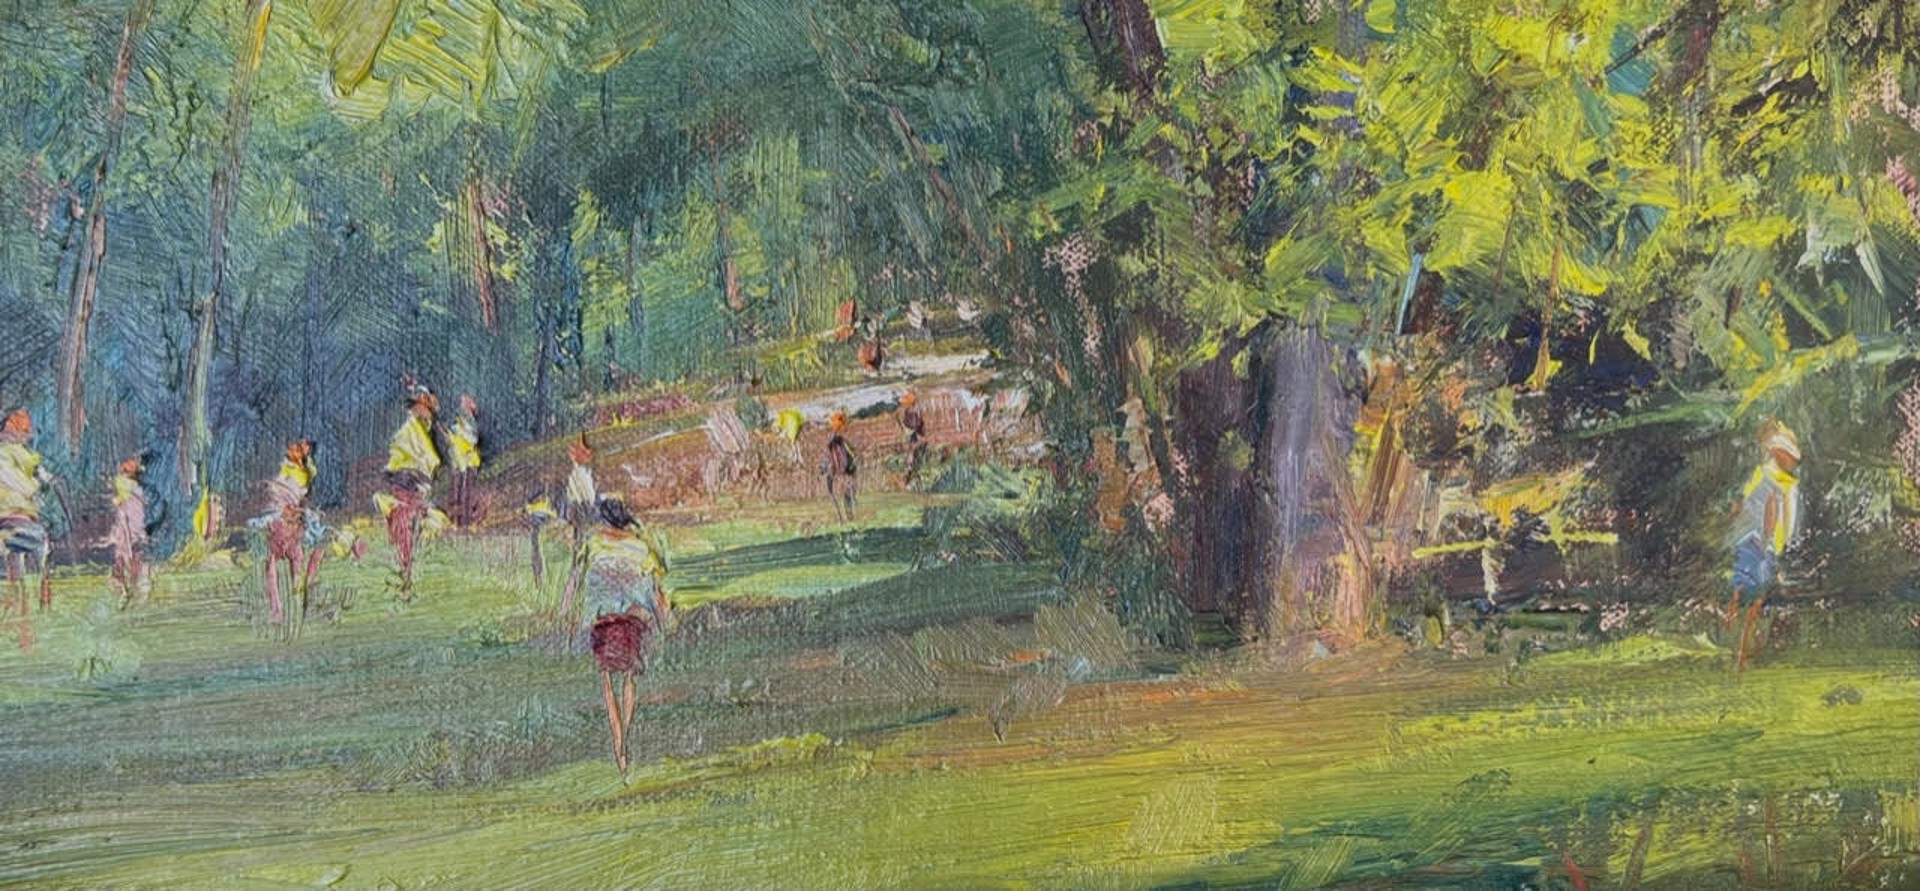 In the Park by George Van Hook